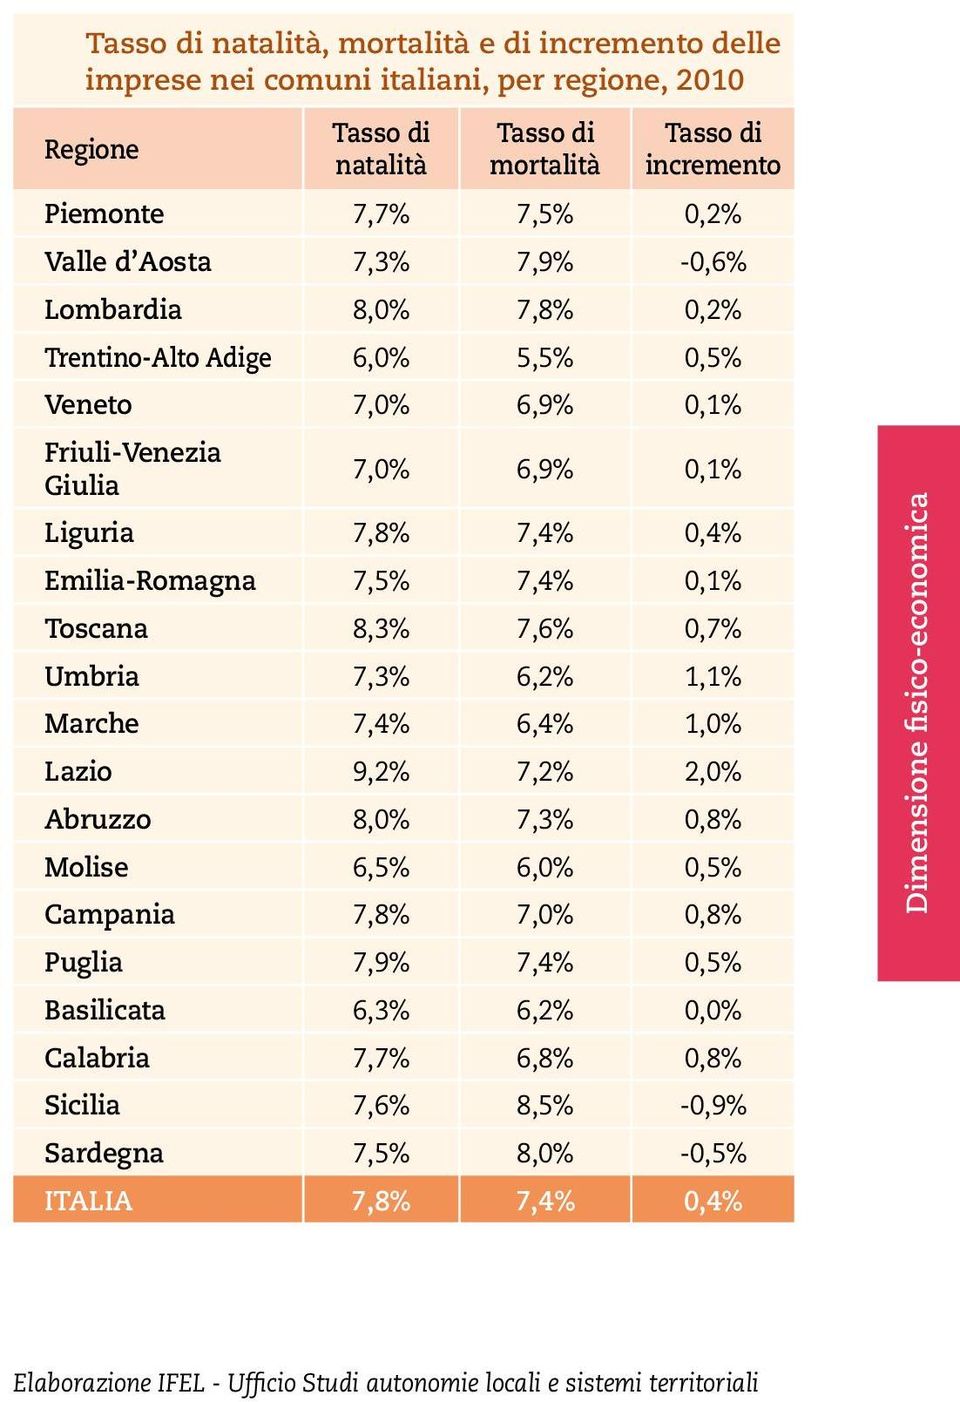 0,4% Emilia-Romagna 7,5% 7,4% 0,1% Toscana 8,3% 7,6% 0,7% Umbria 7,3% 6,2% 1,1% Marche 7,4% 6,4% 1,0% Lazio 9,2% 7,2% 2,0% Abruzzo 8,0% 7,3% 0,8% Molise 6,5% 6,0% 0,5% Campania